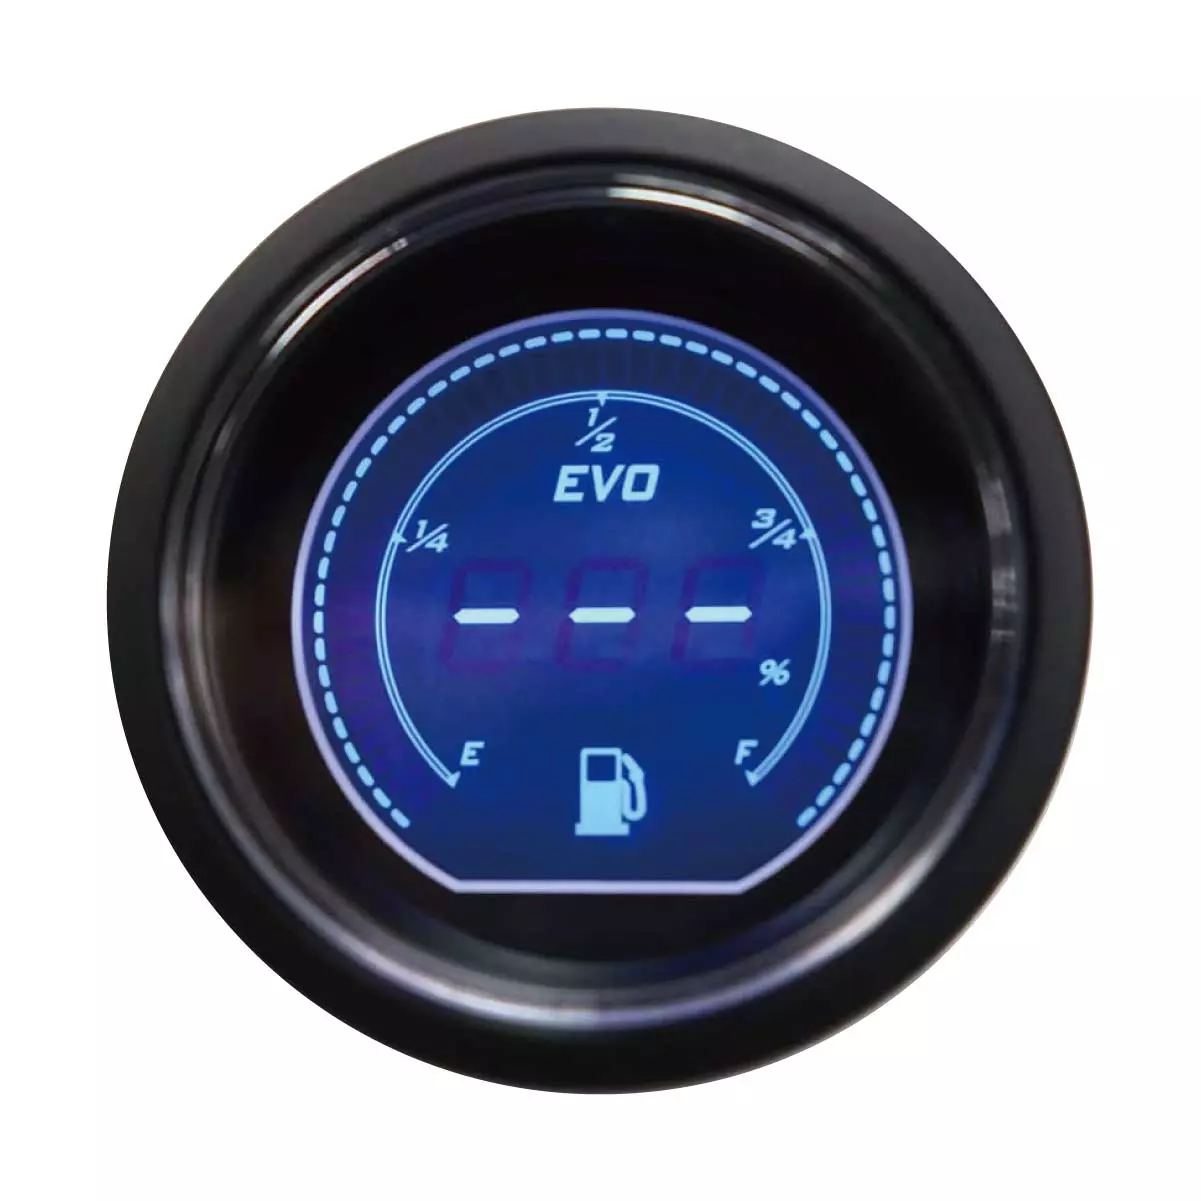 MOTOR METER RACING EVO Series Fuel Gauge Blue Red Backlit Included Sender